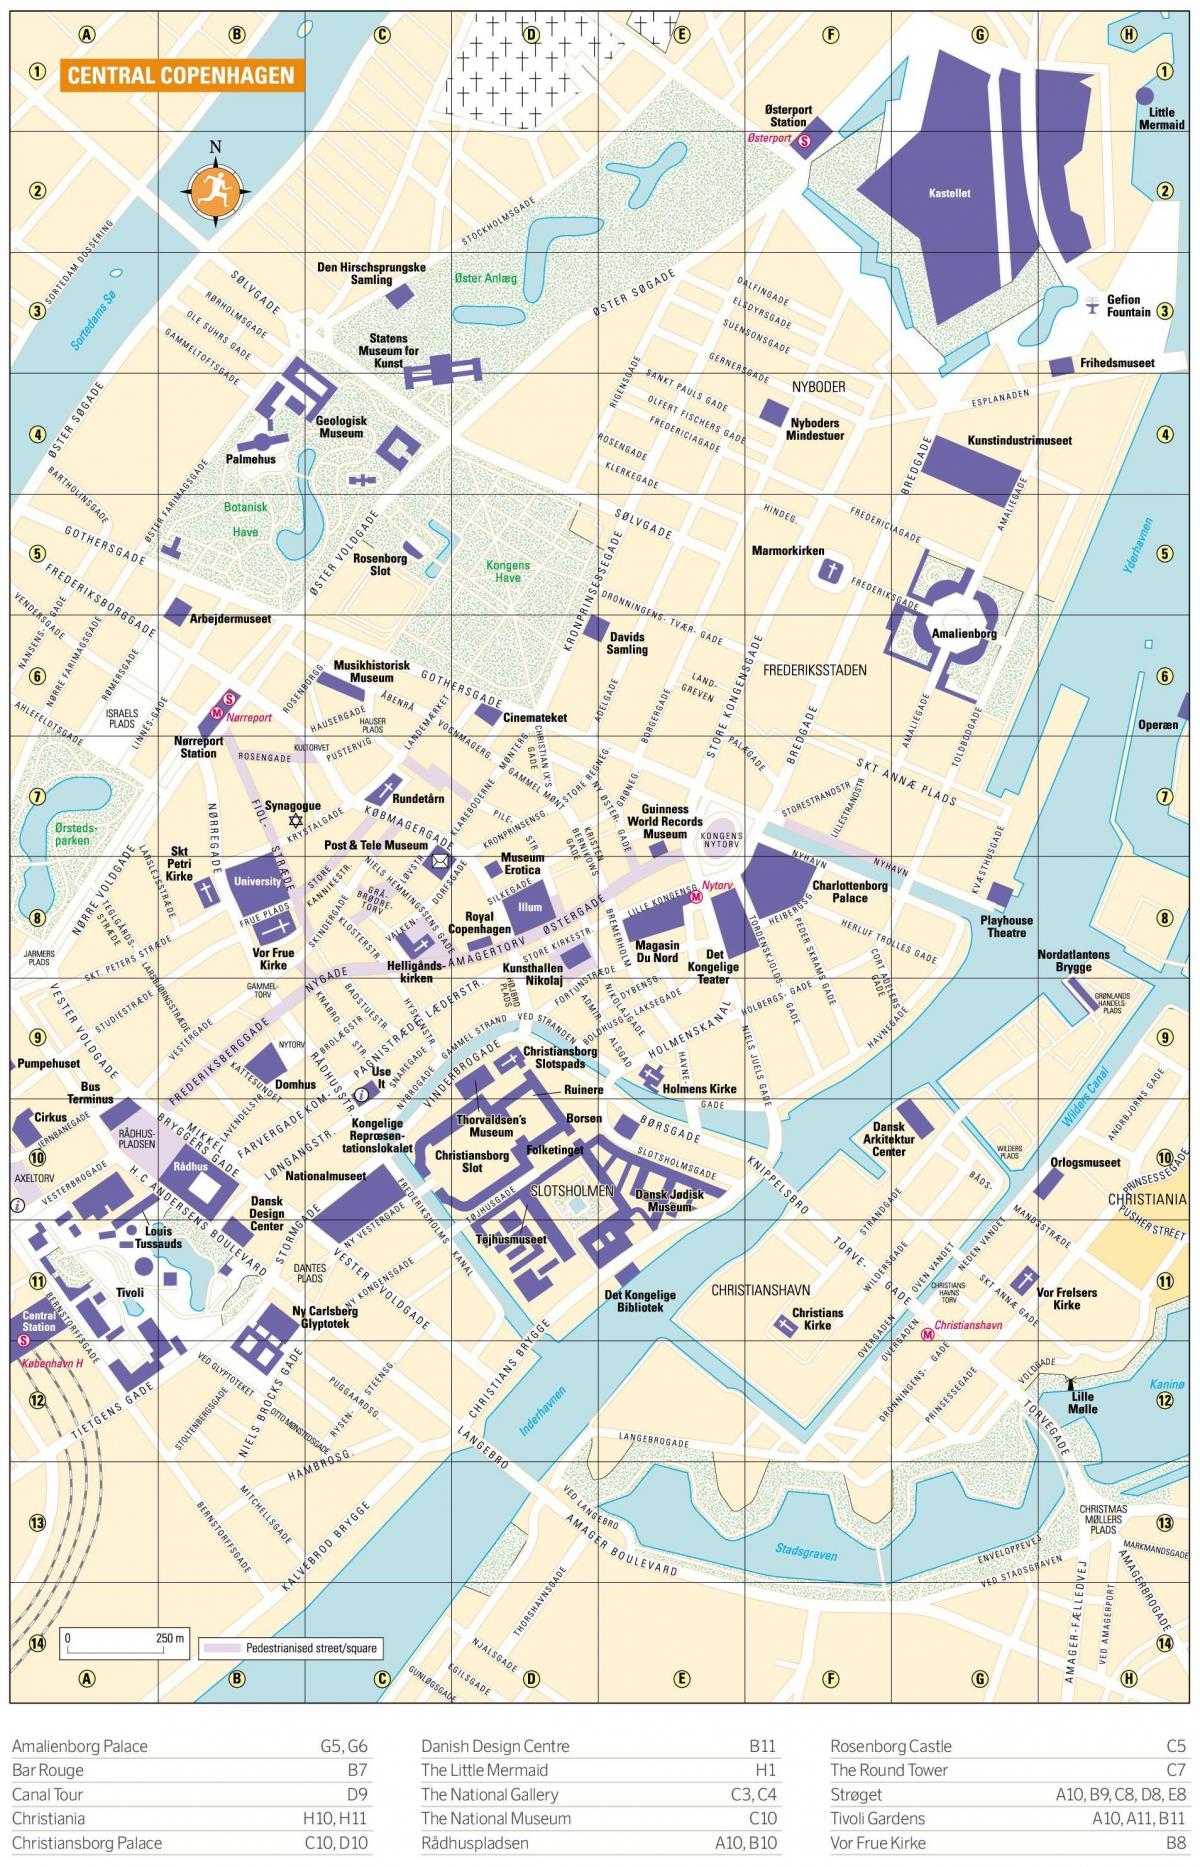 Mappa del centro di Copenaghen